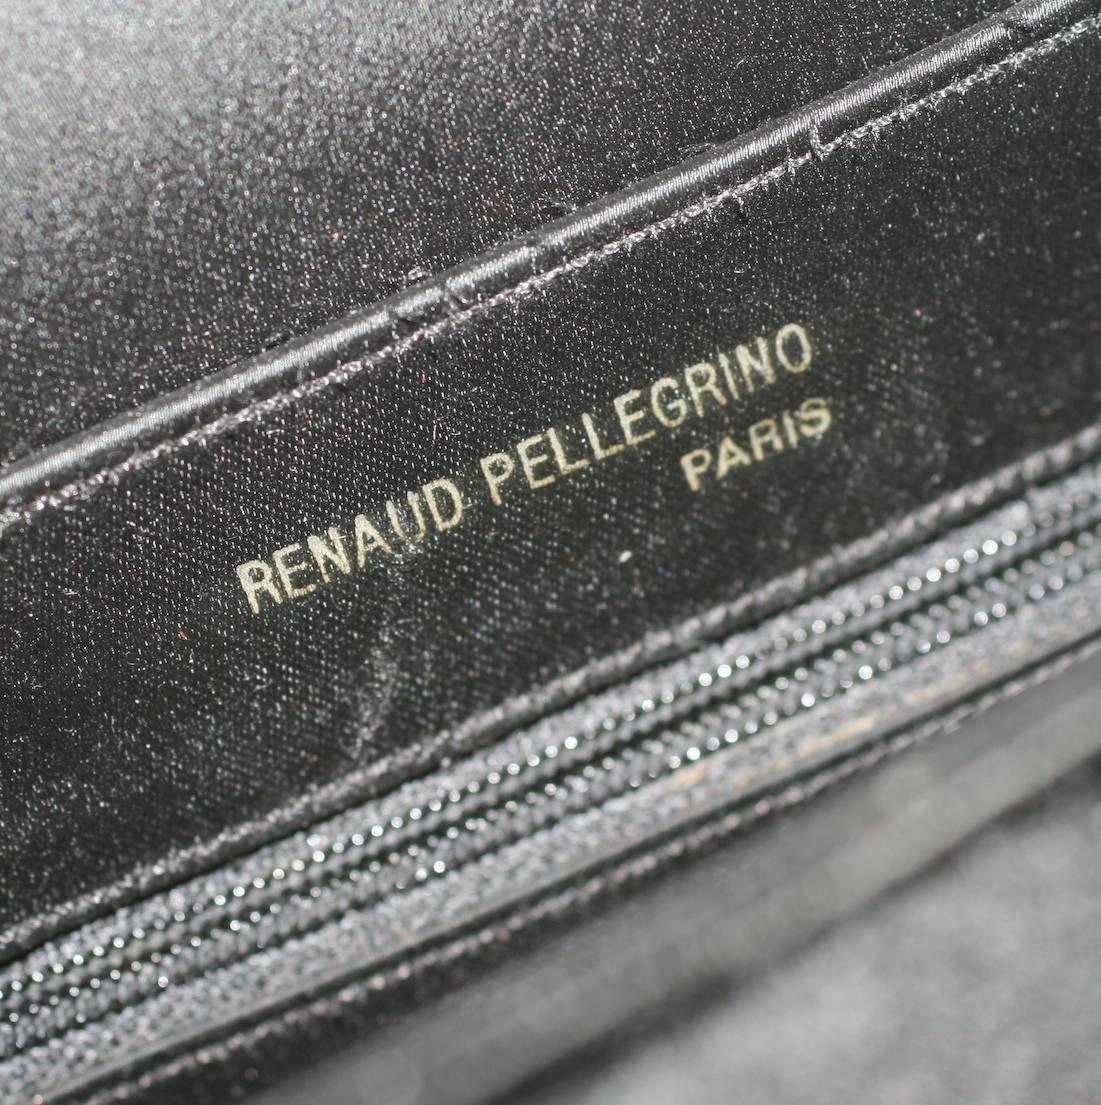 Women's Renaud Pellegrino Black Velvet Bow Clutch